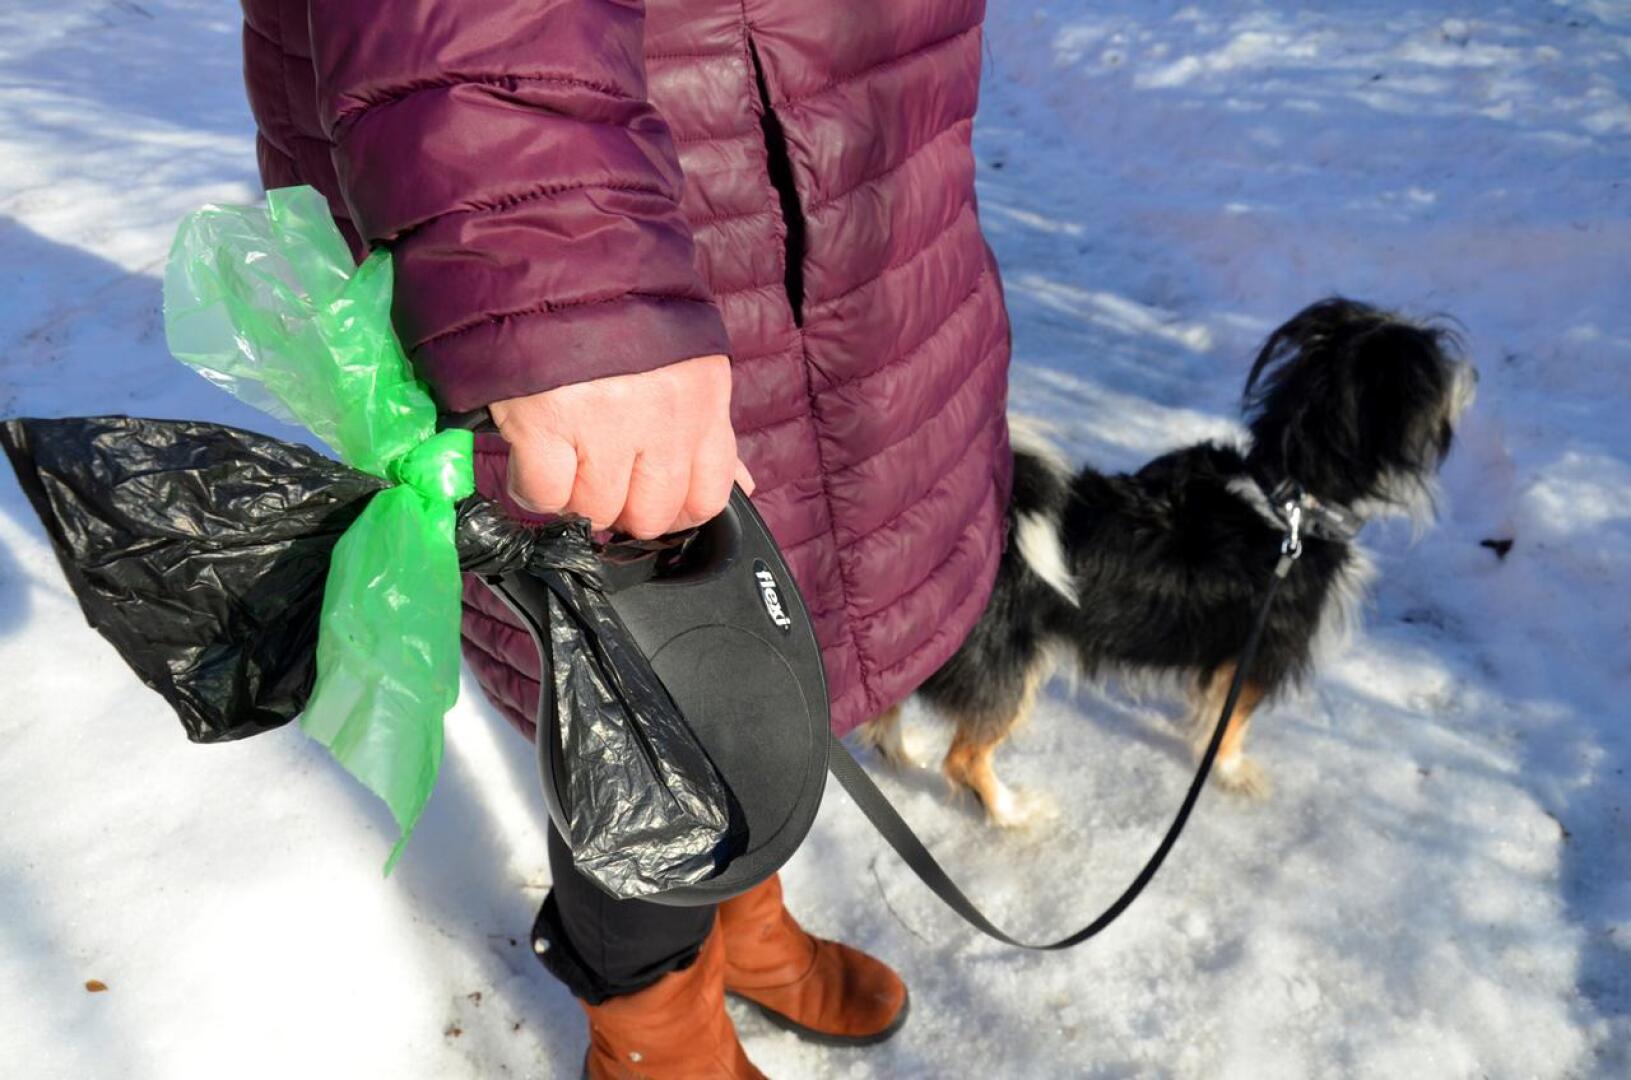 Perhon Mäntymetsän päiväkodin Mäyrät-ryhmäläiset toivovat mielipidekirjoituksessaan, ettei koirankakkoja jätettäisi maahan.